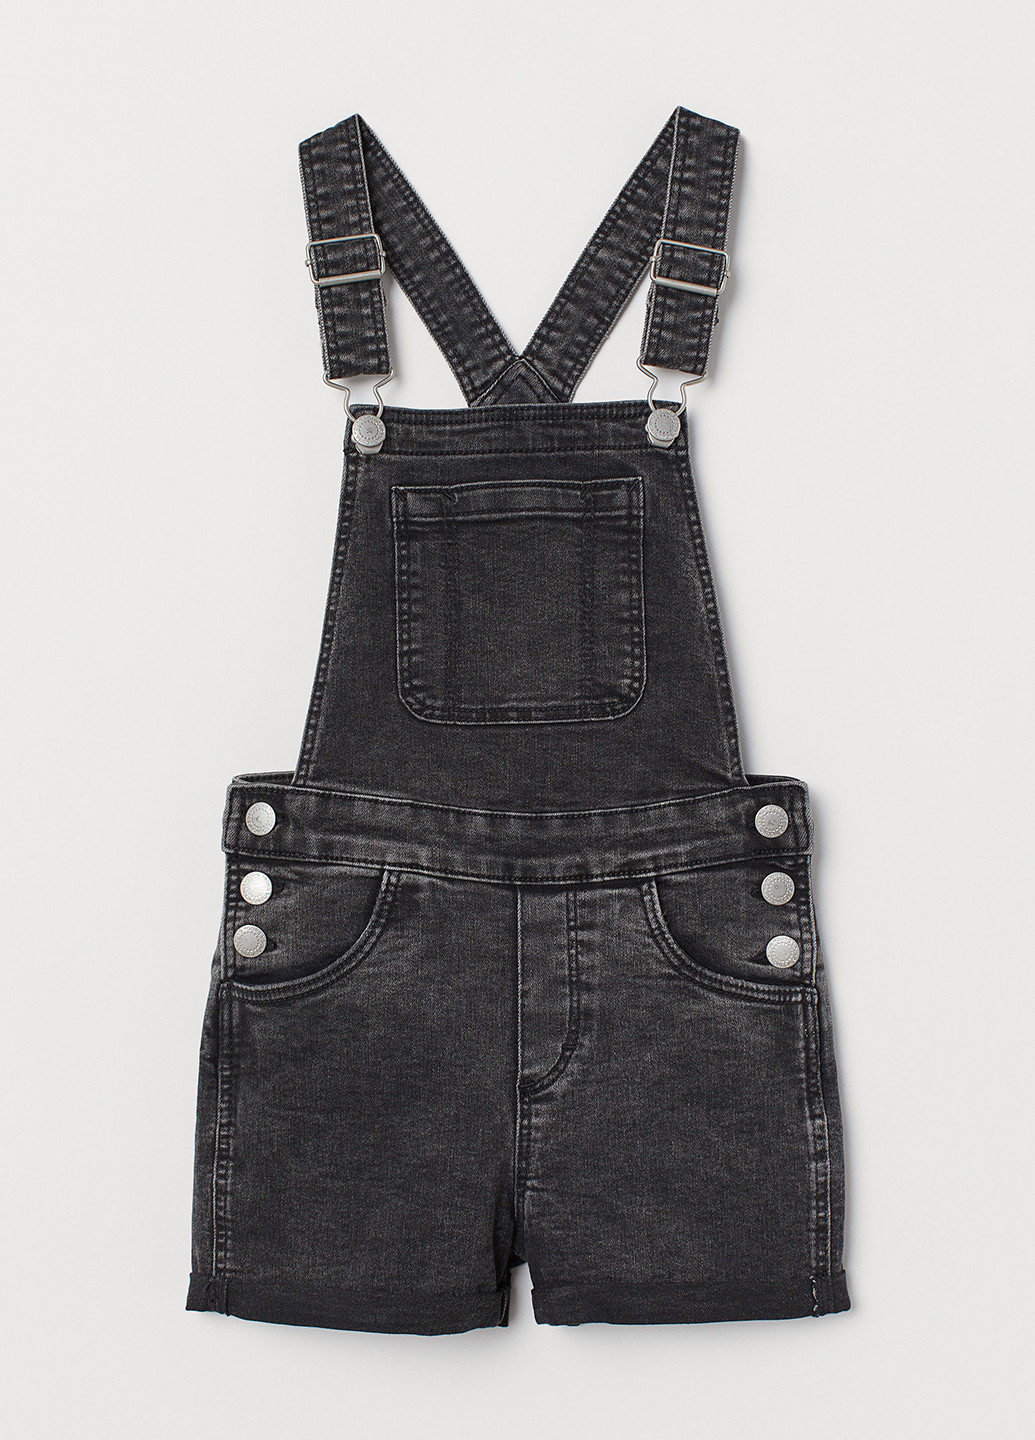 Комбинезон H&M комбинезон-шорты однотонный тёмно-серый джинсовый хлопок